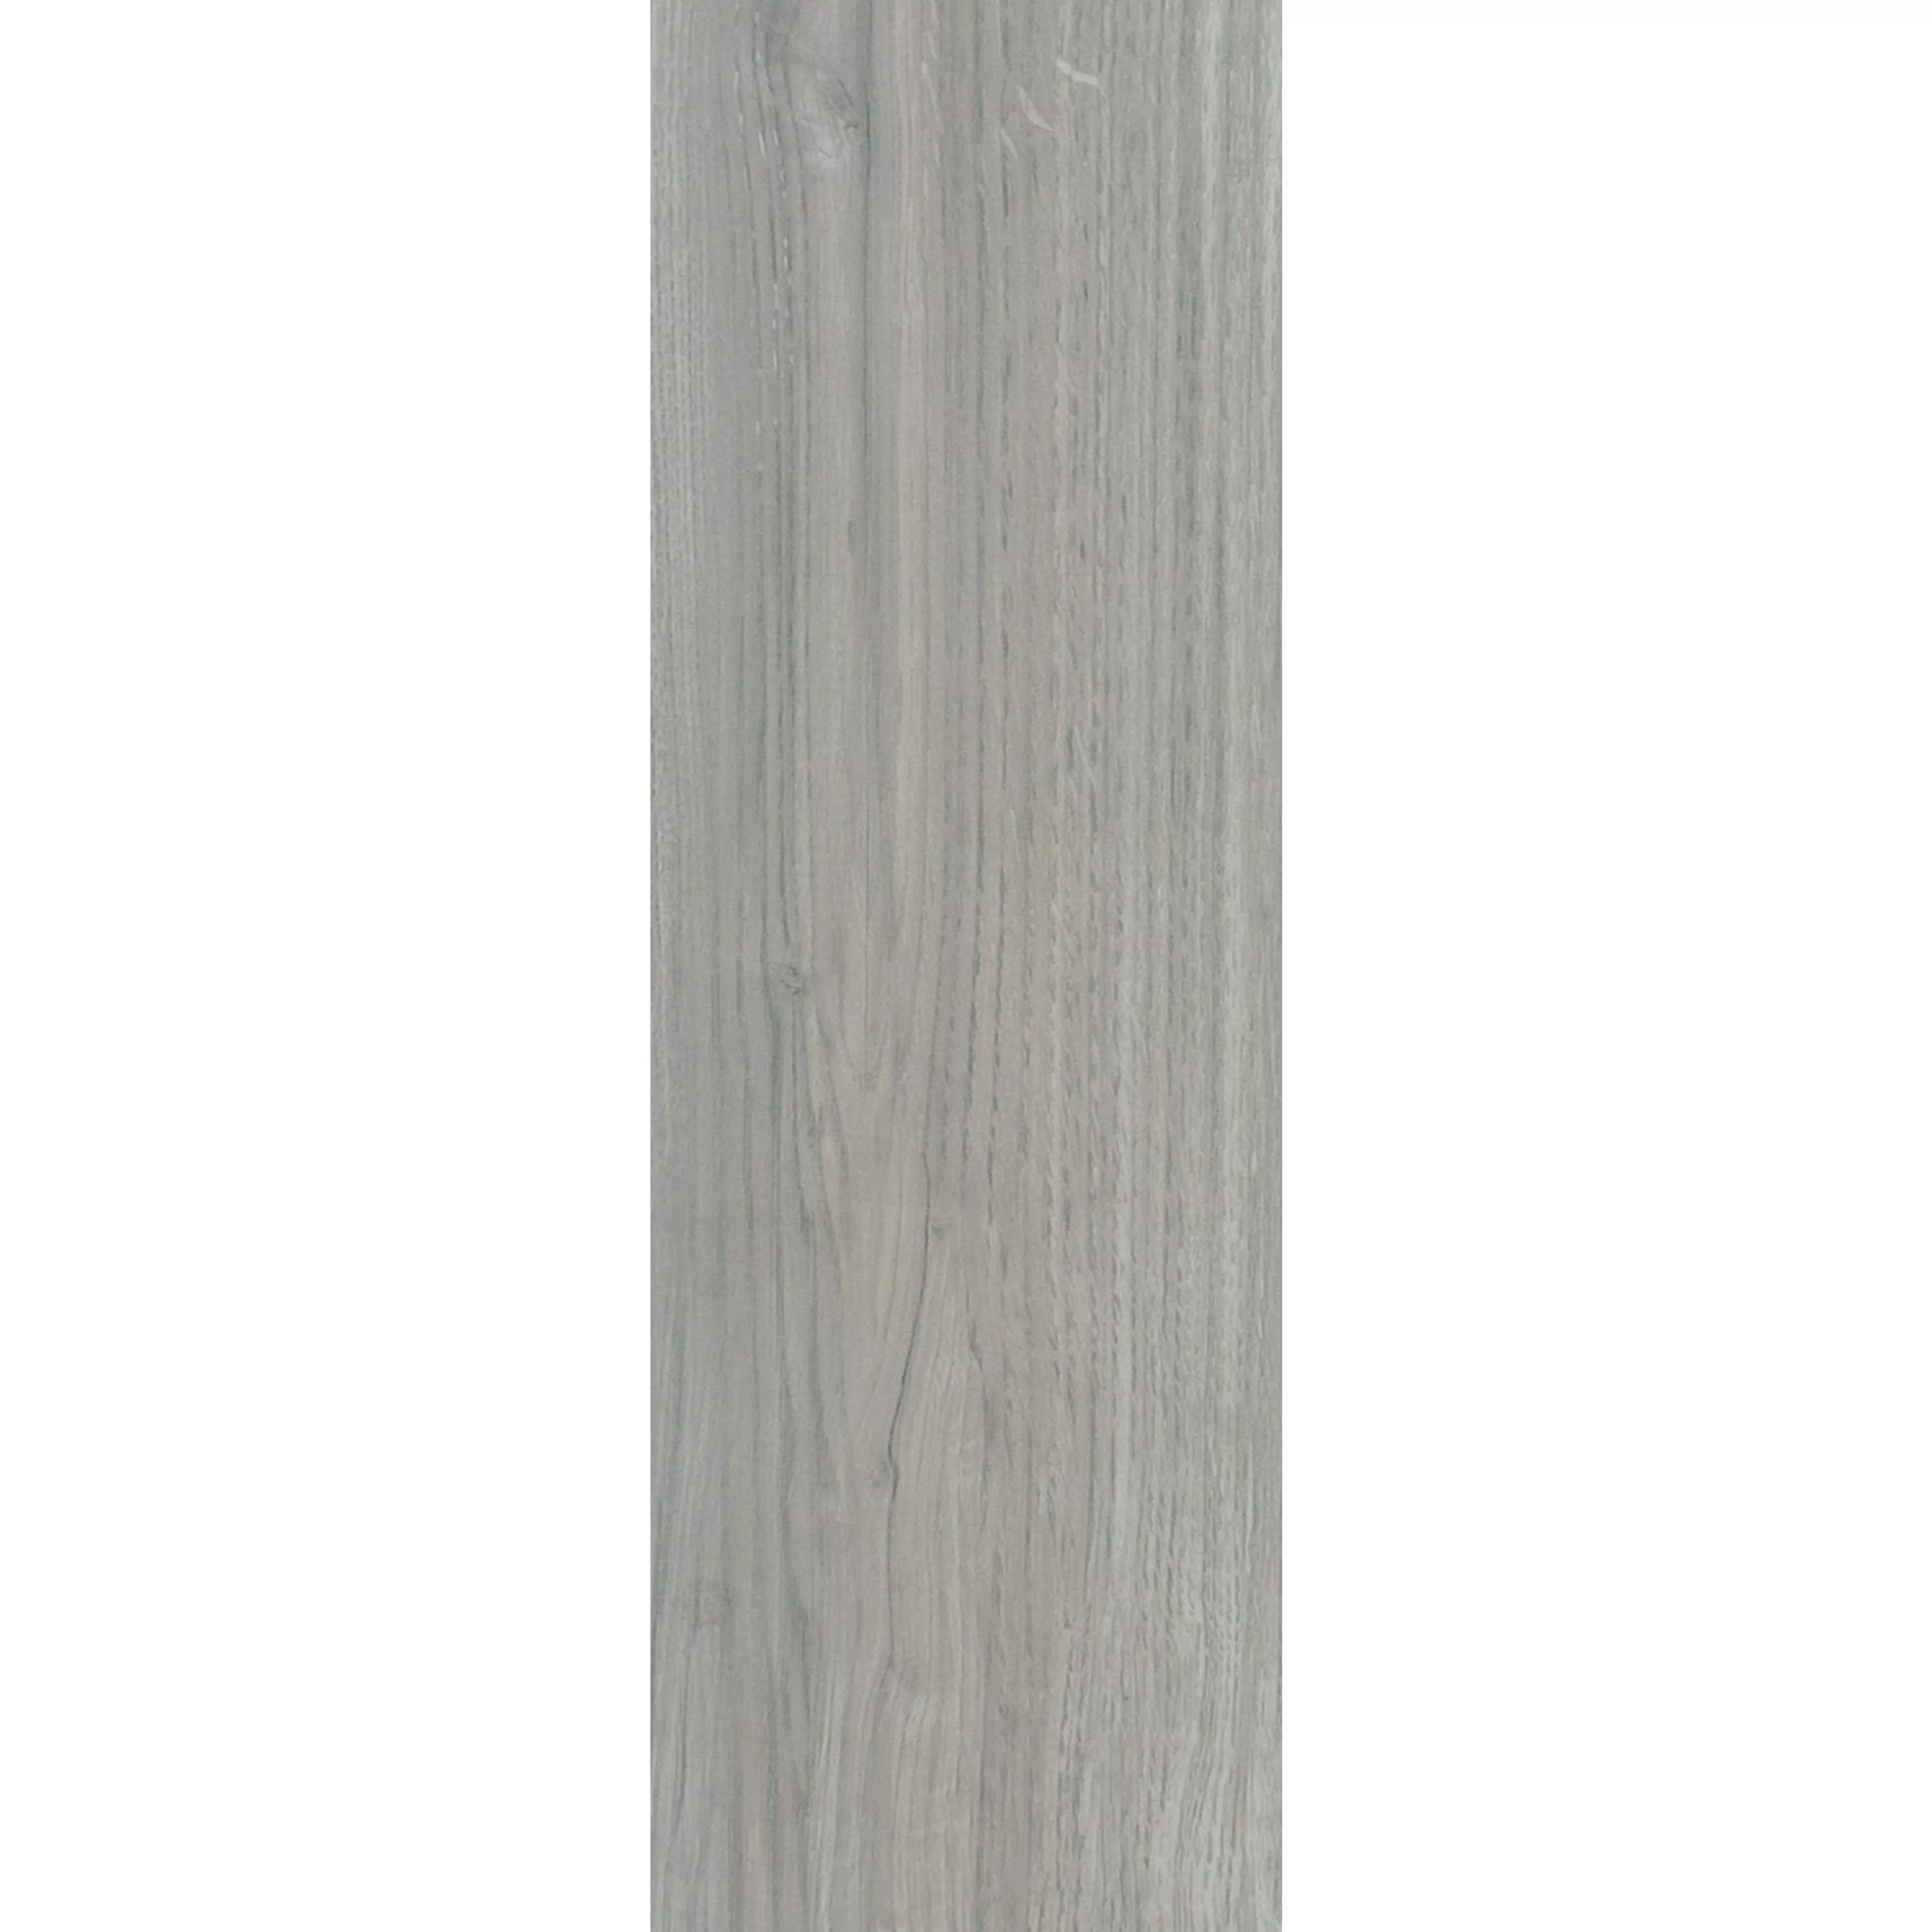 Muster von Bodenfliesen Holzoptik Fullwood Beige 20x120cm 